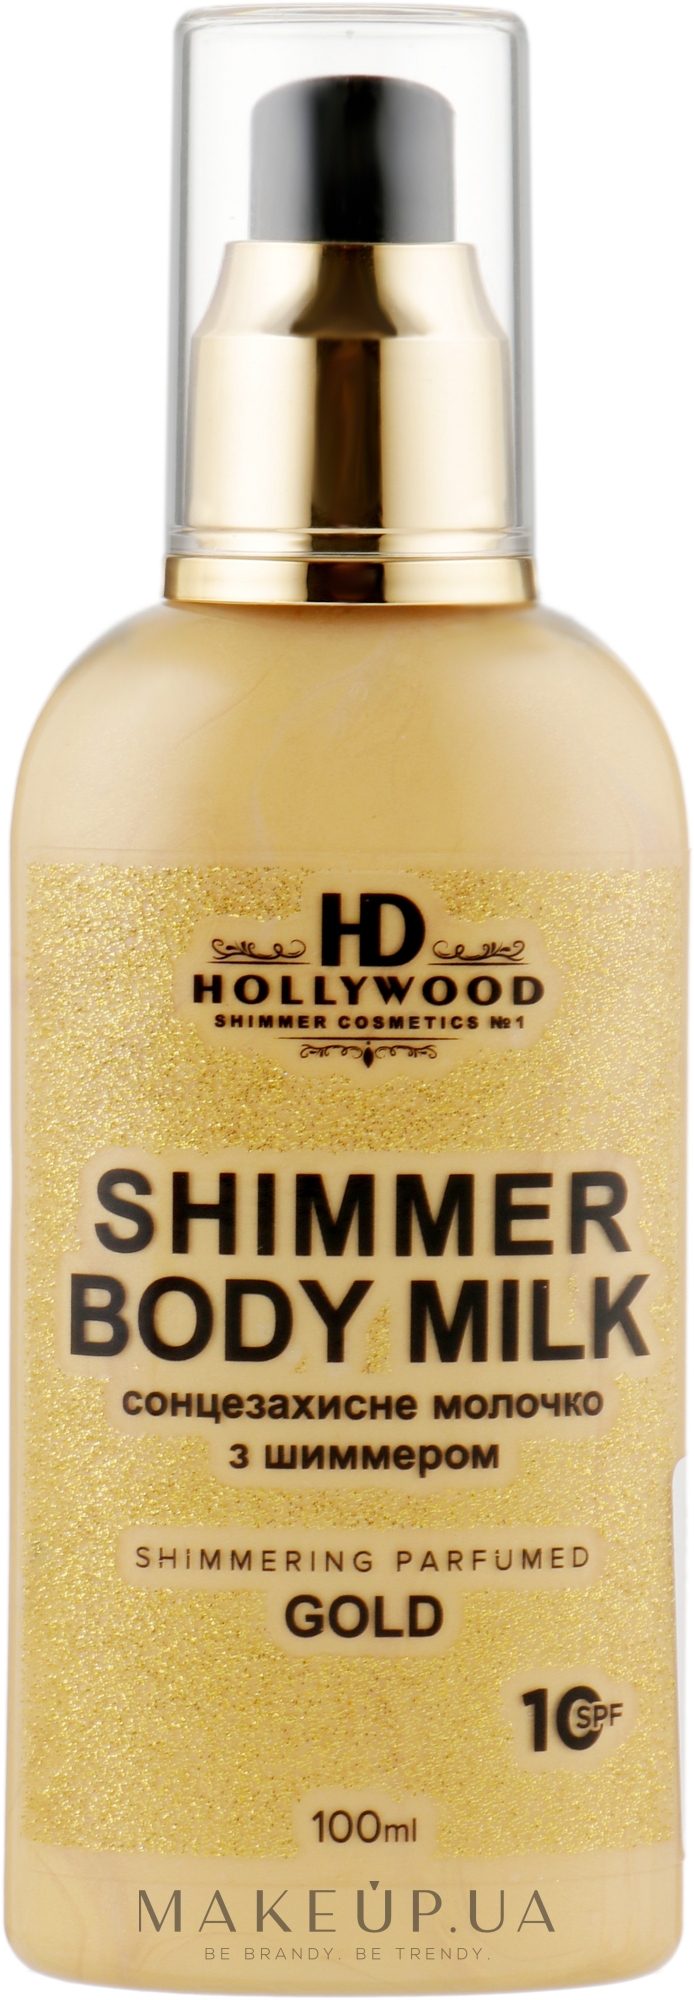 Молочко з шимером для тіла - HD Hollywood Shimmer Body Milk Gold SPF 10 — фото 100ml